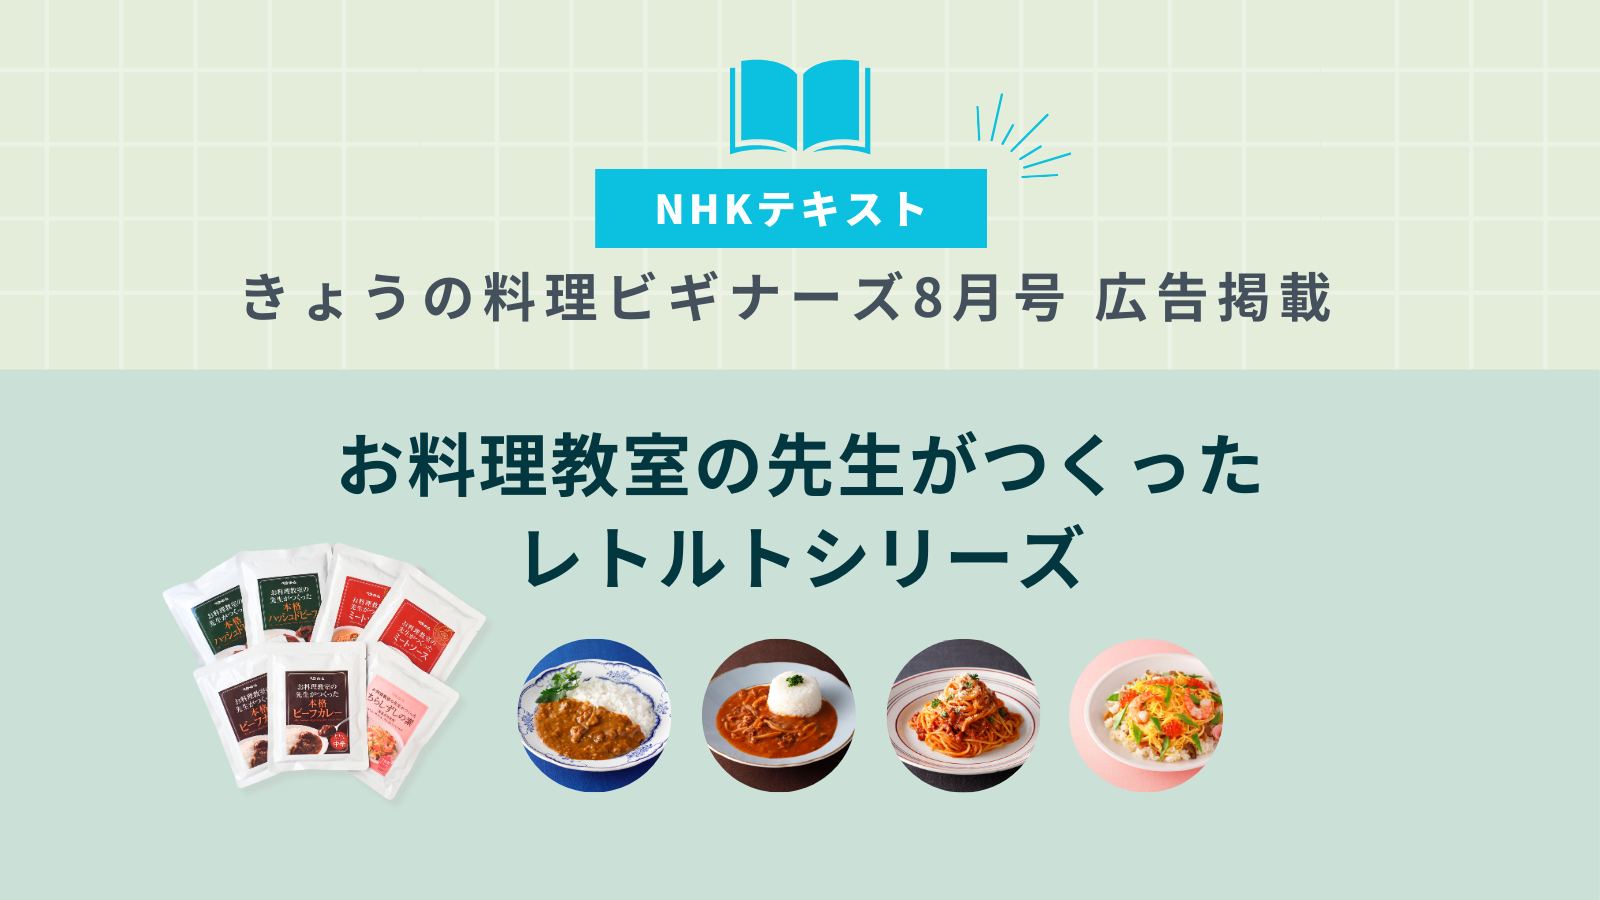 記事「［NHKテキストきょうの料理ビギナーズ 8月号 広告掲載］お料理教室の先生がつくったレトルトシリーズ」のイメージ画像です